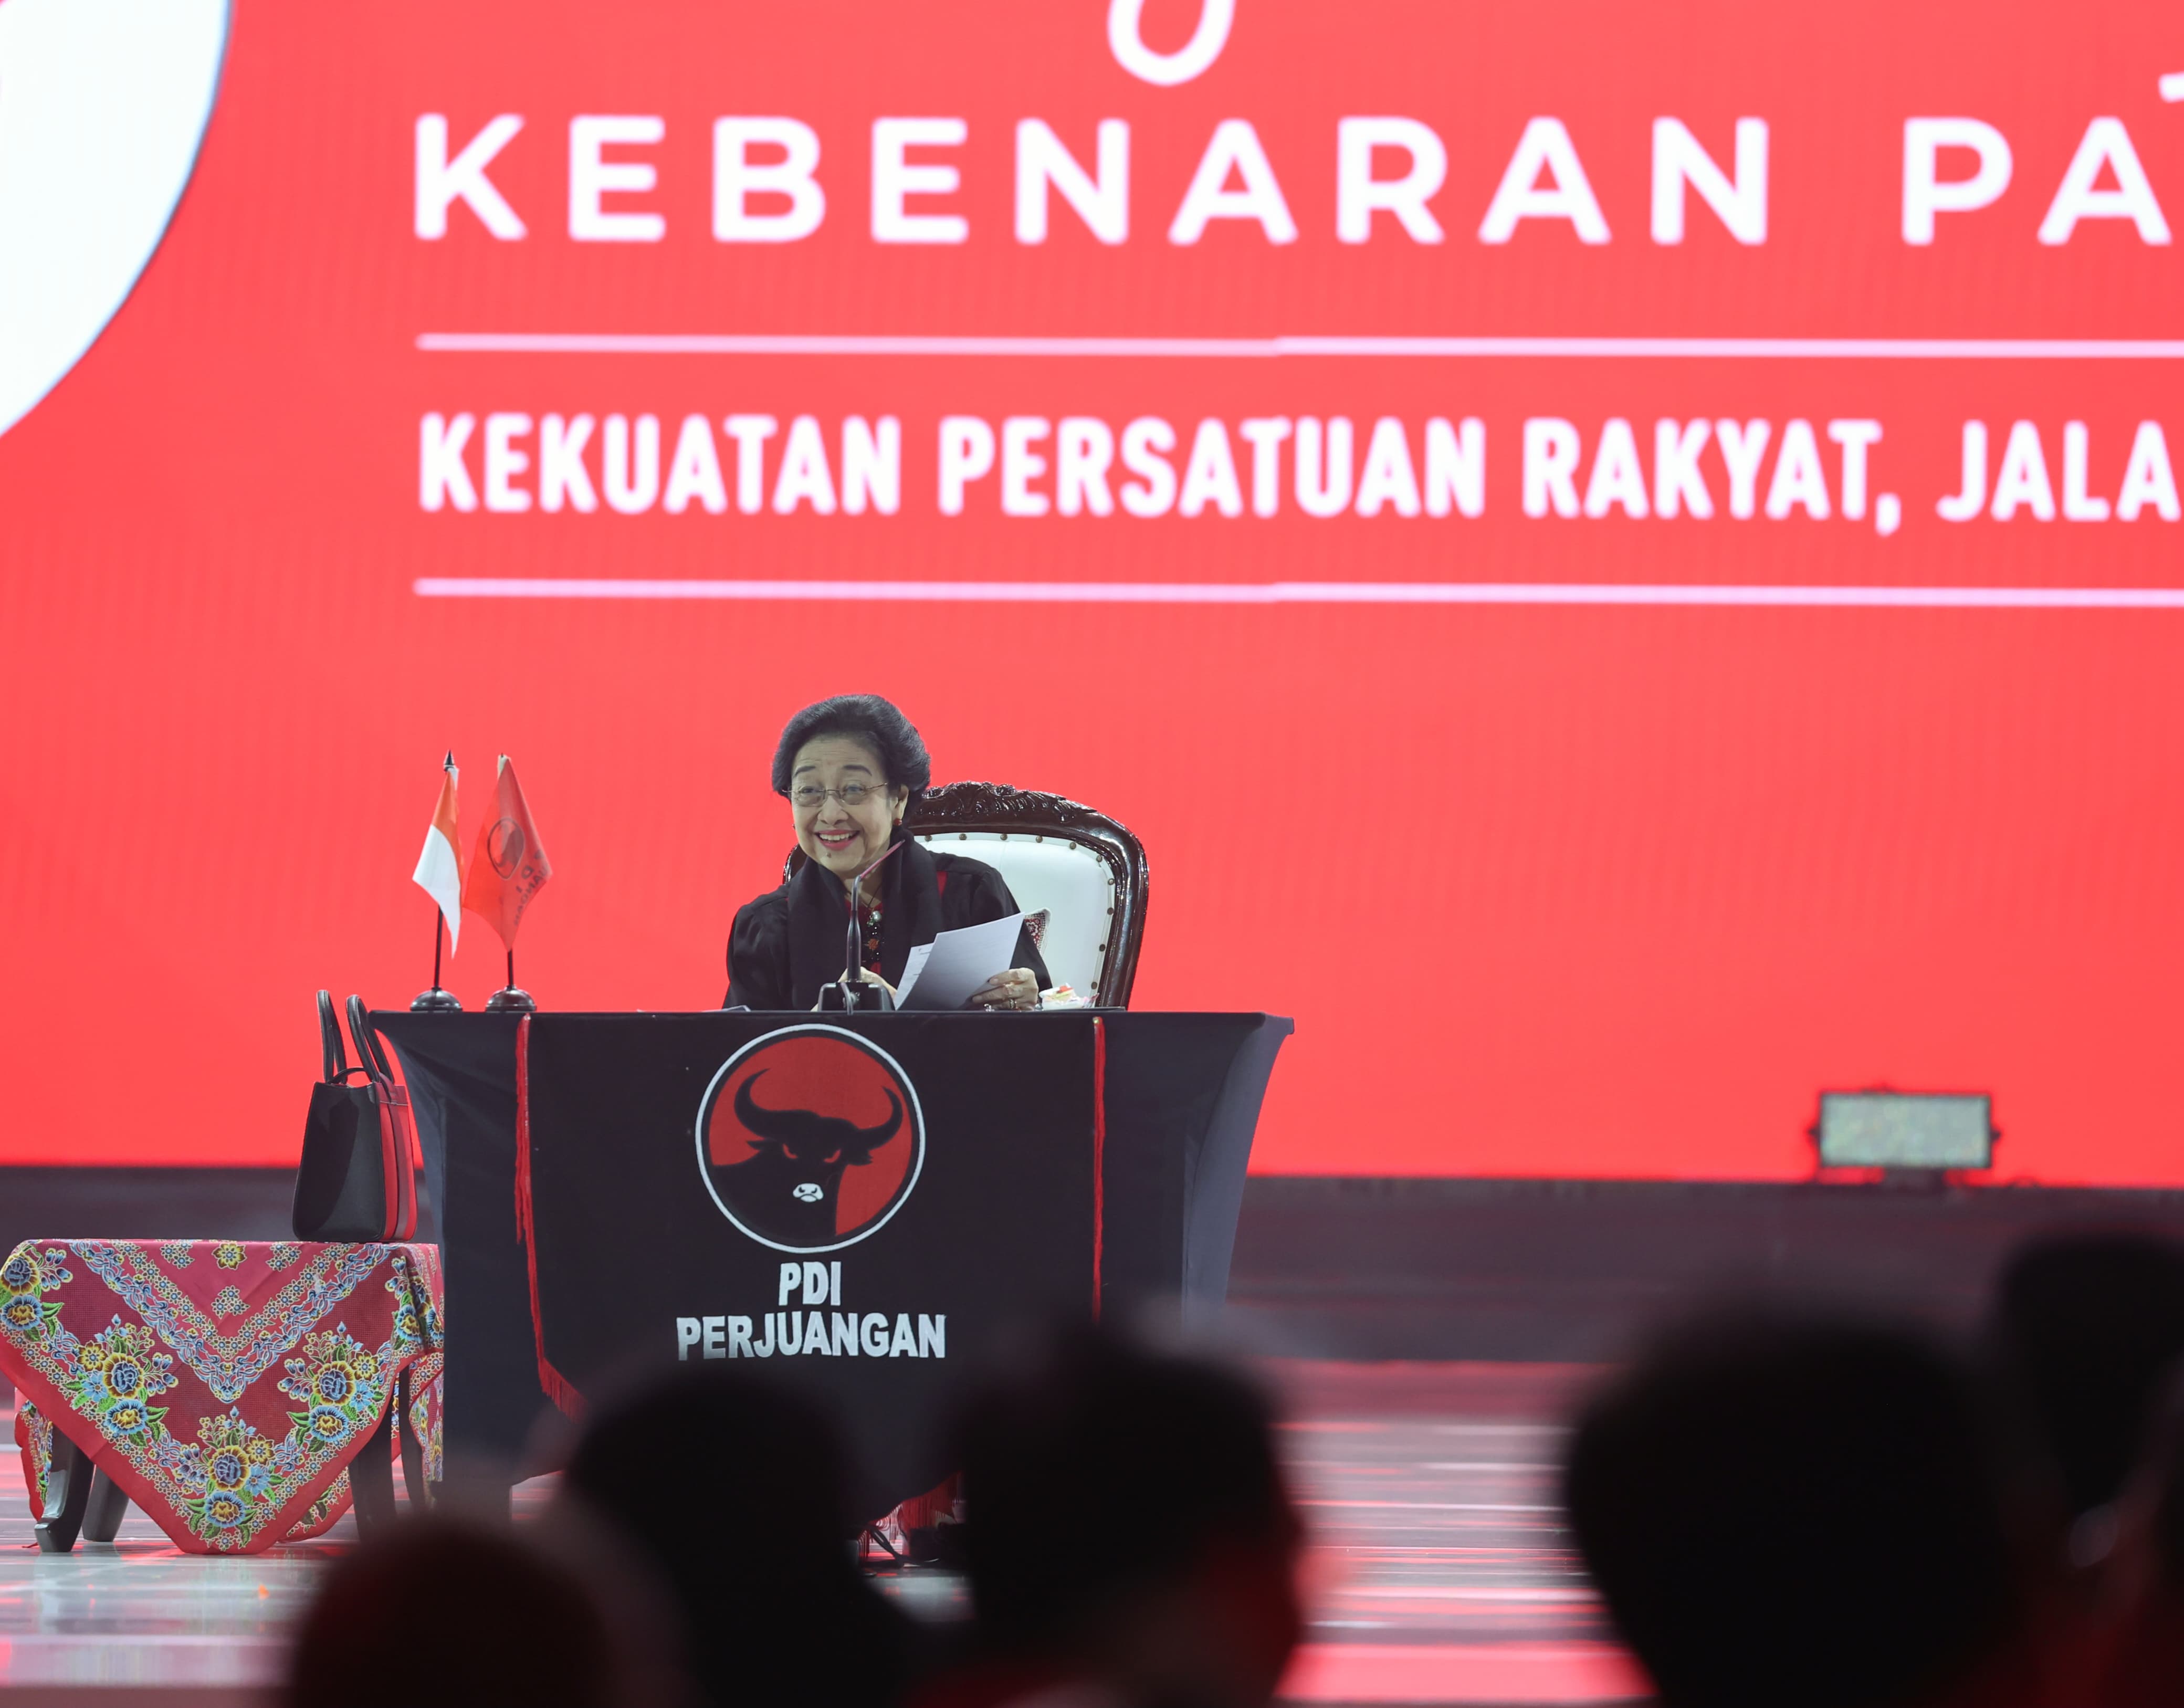 PPP, Hanura, dan Perindo Tetap Setia dengan PDI Perjuangan: Megawati Soekarnoputri Menyatakan Kebanggaannya da